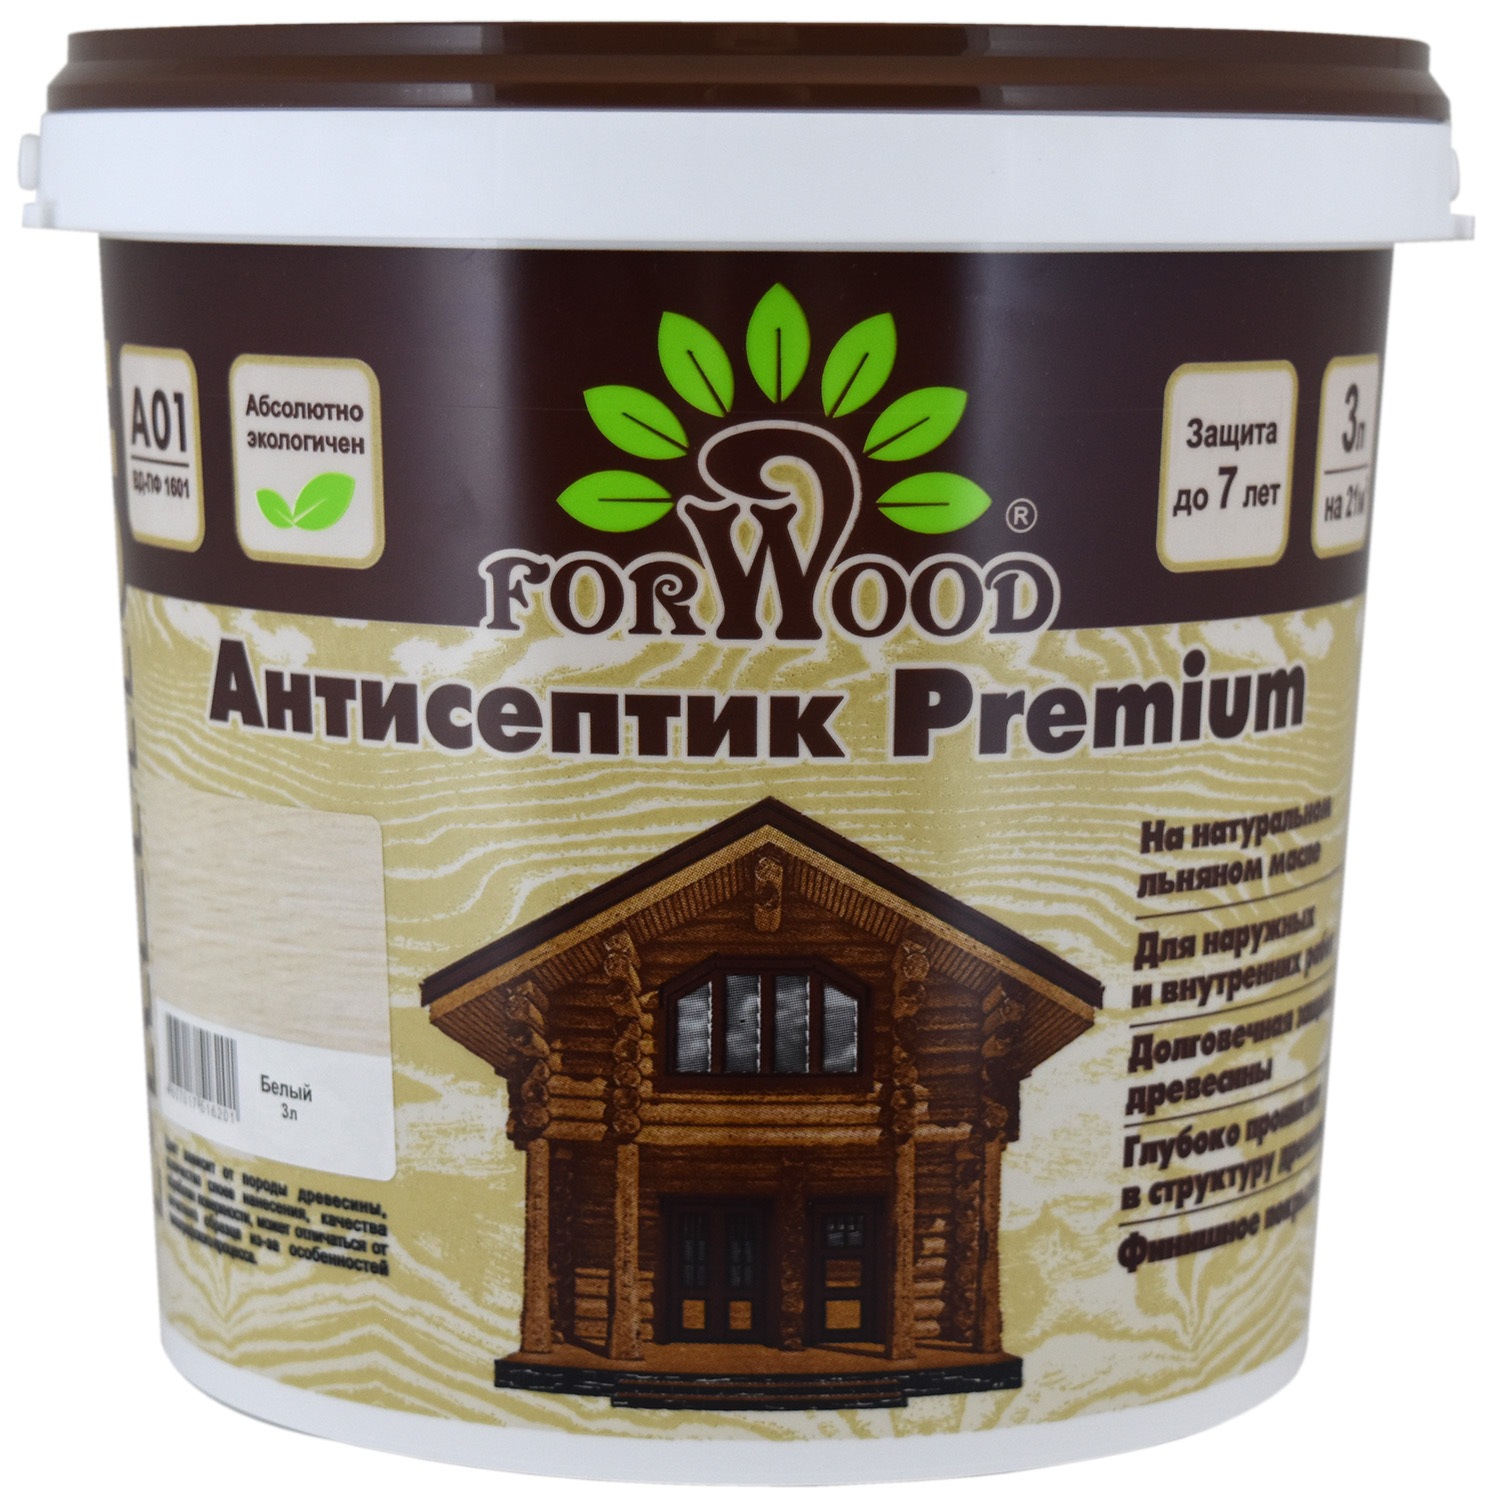 Антисептик с 3 2 2. Антисептик Forwood Premium 4607017515921 цвет палисандр. Forwood антисептик для дерева. Масло для террас Форвуд. Forwood стандарт.